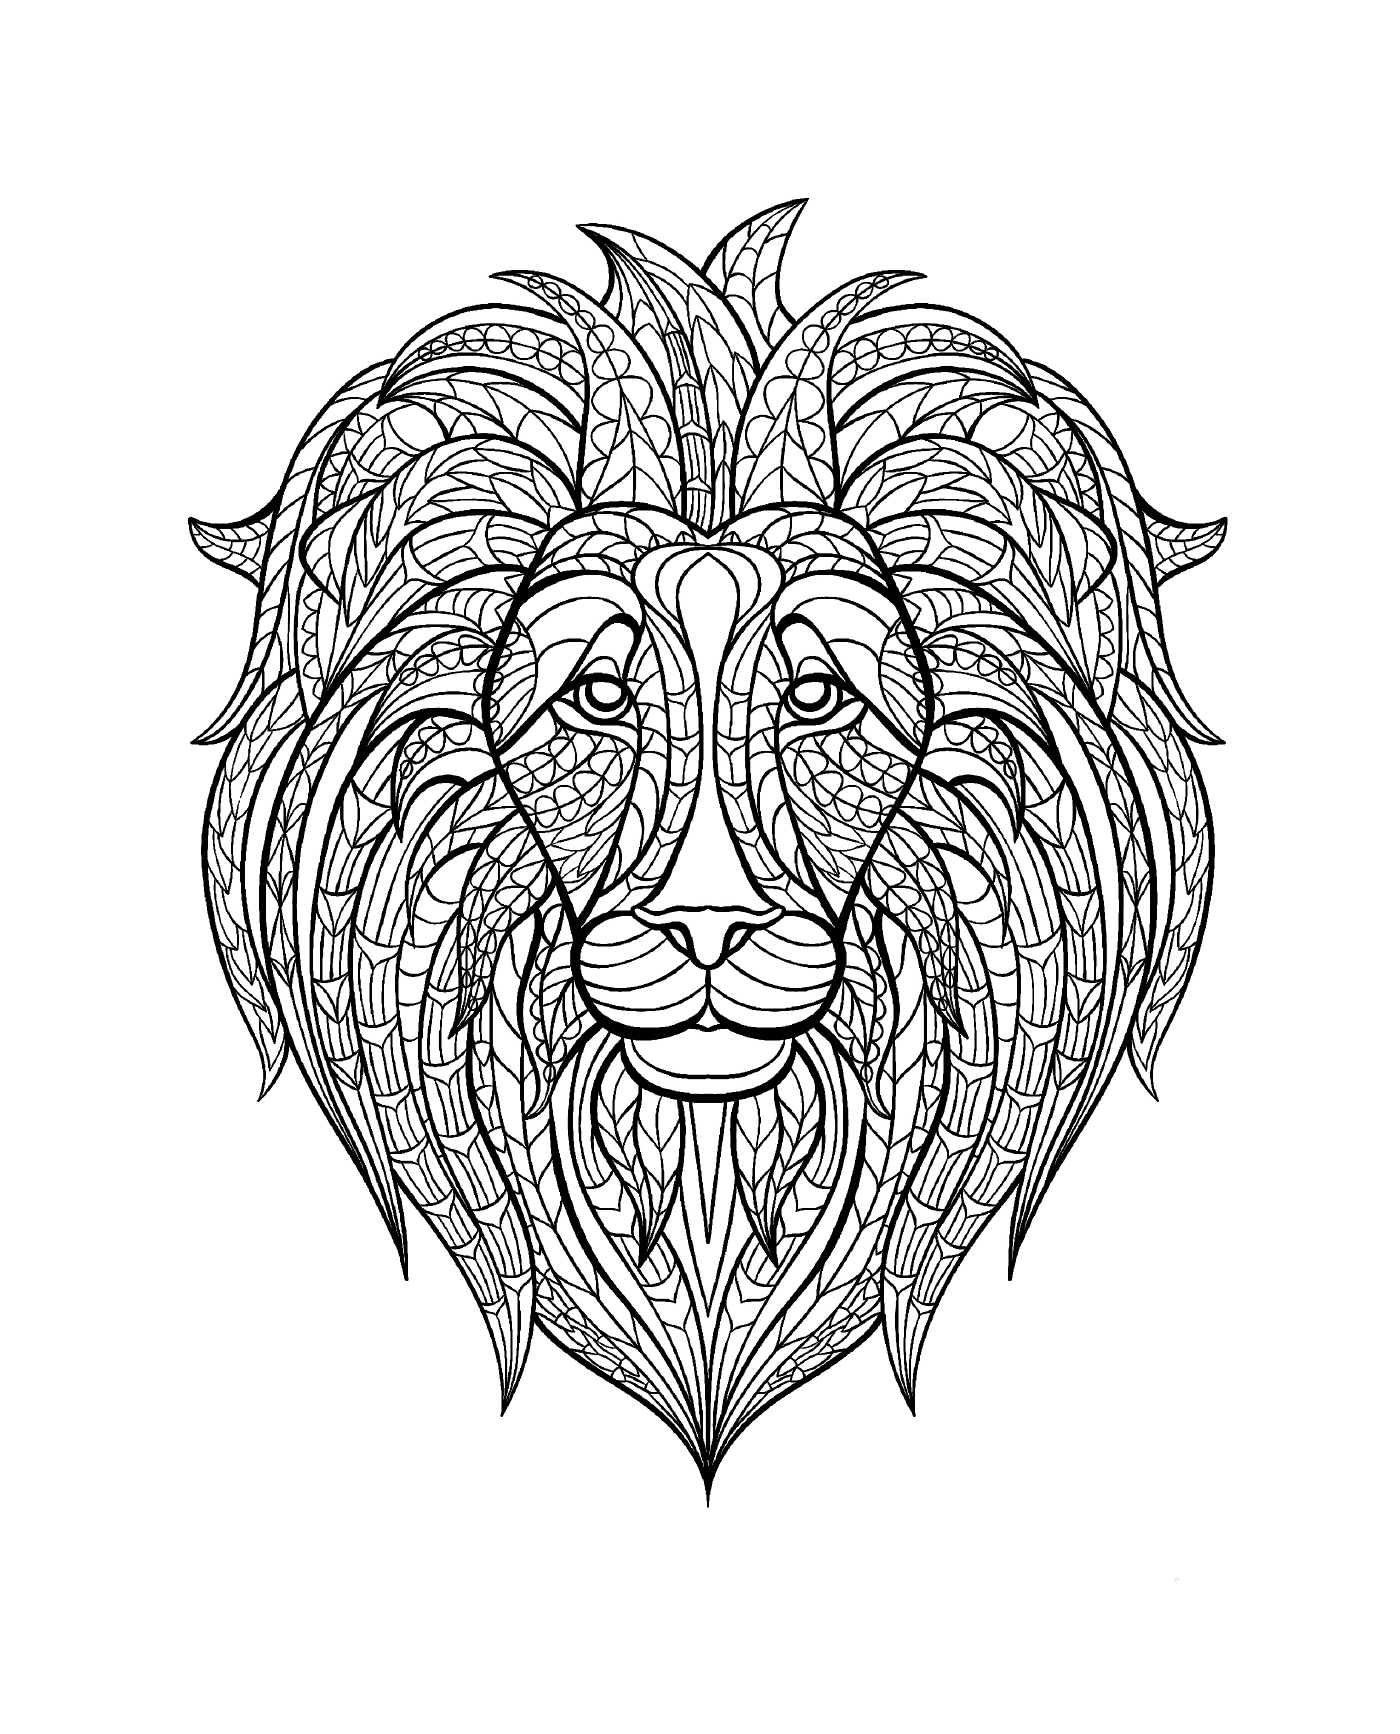  Löwenkopf mit einem Muster im Gesicht 